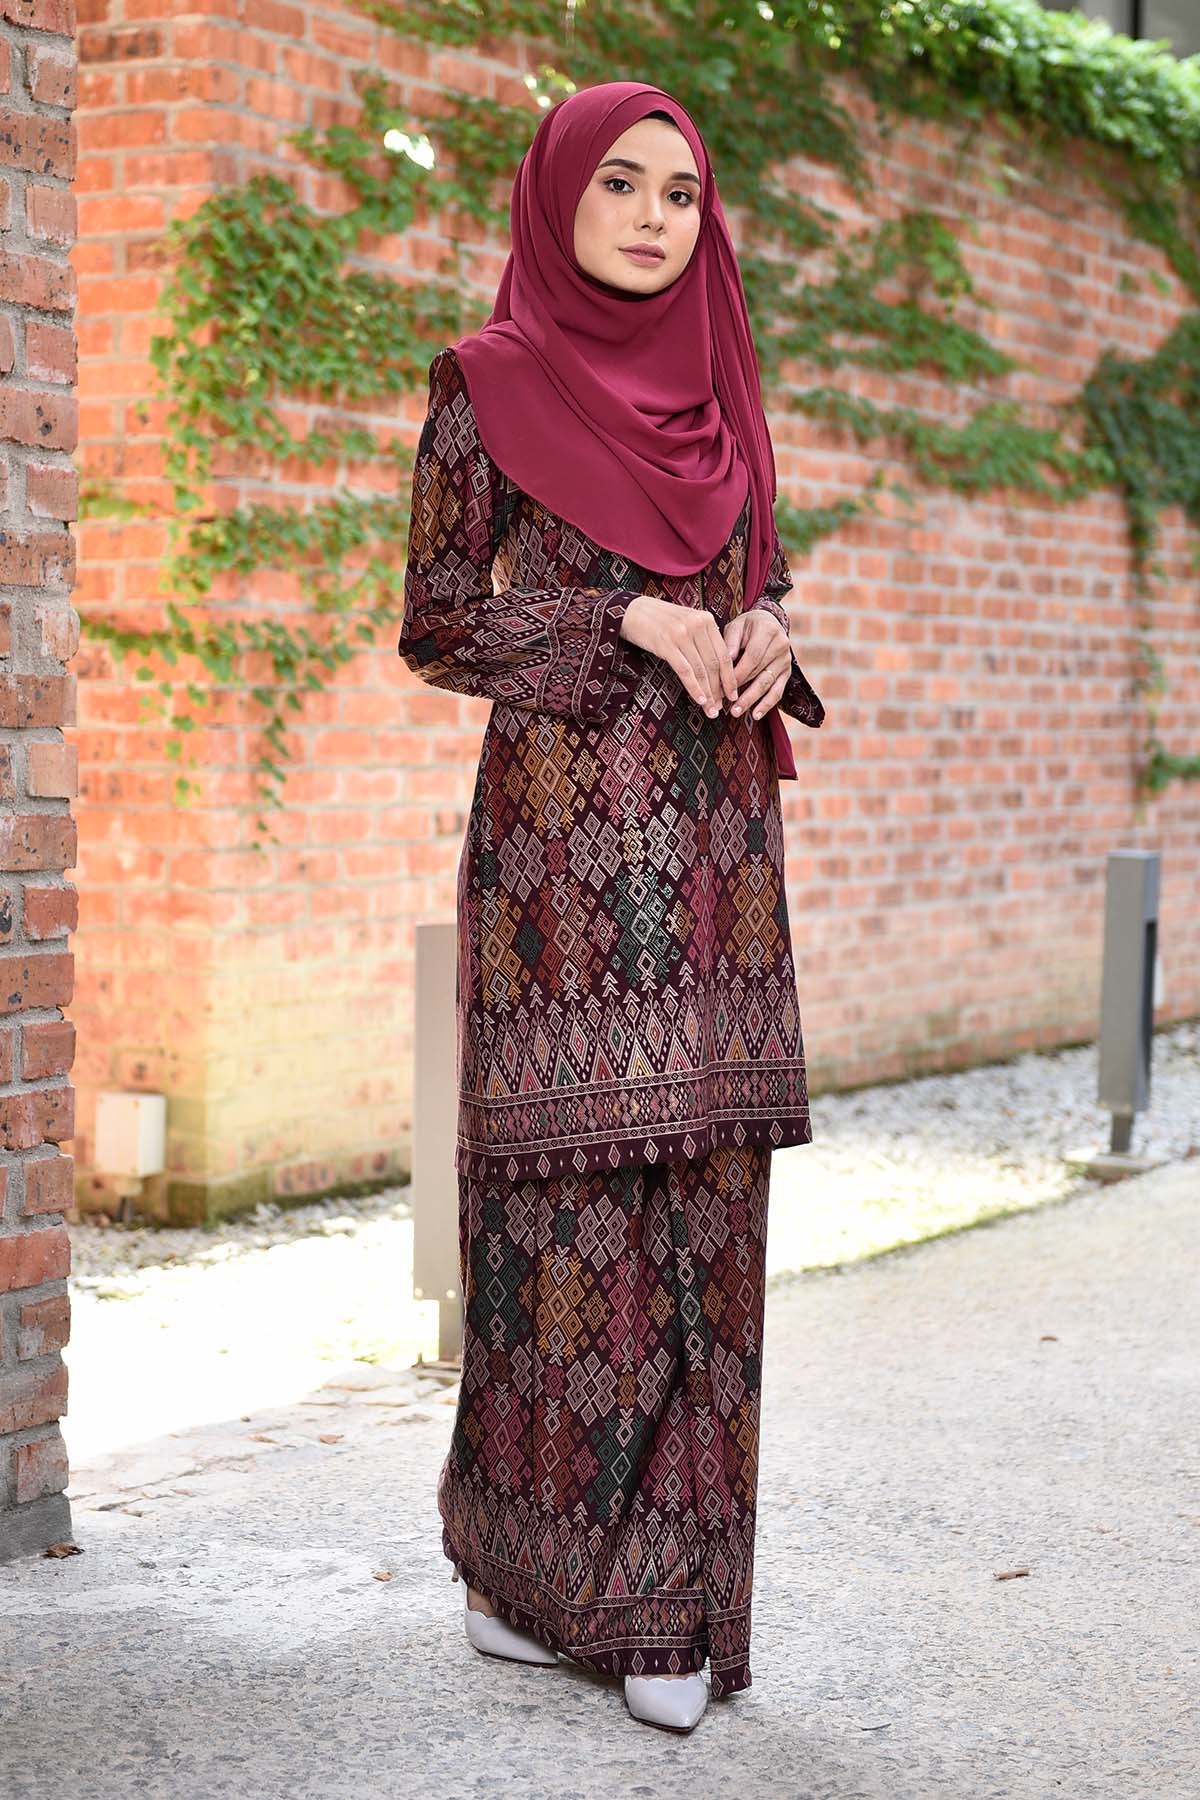 Model Model Baju Bridesmaid Hijab 2019 D0dg Baju Kurung songket Luella Deep Maroon